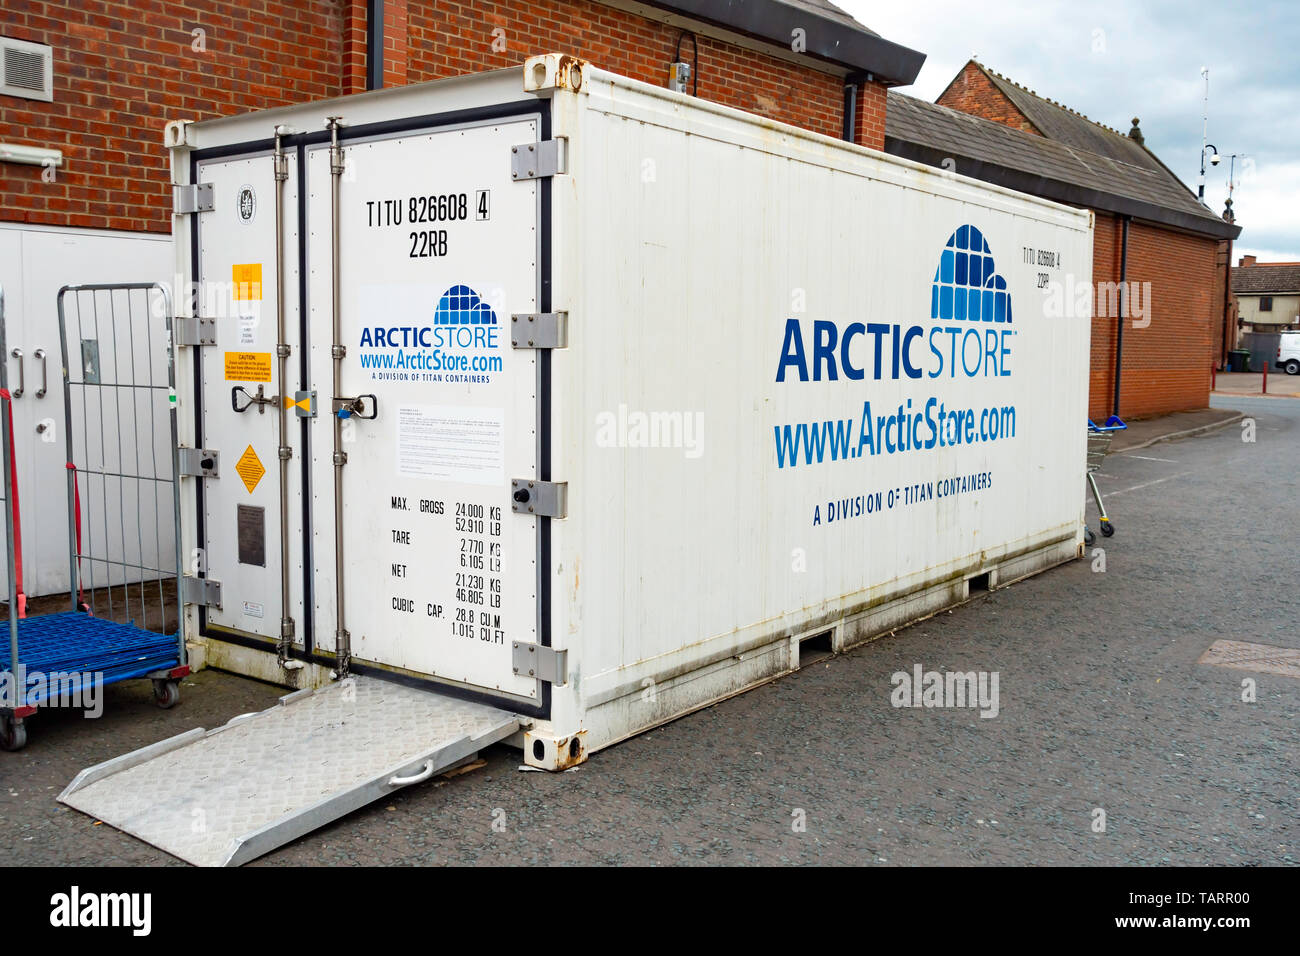 Magasin de l'Arctique des conteneurs de stockage à froid pour l'alimentation derrière un supermarché au Royaume-Uni. Banque D'Images